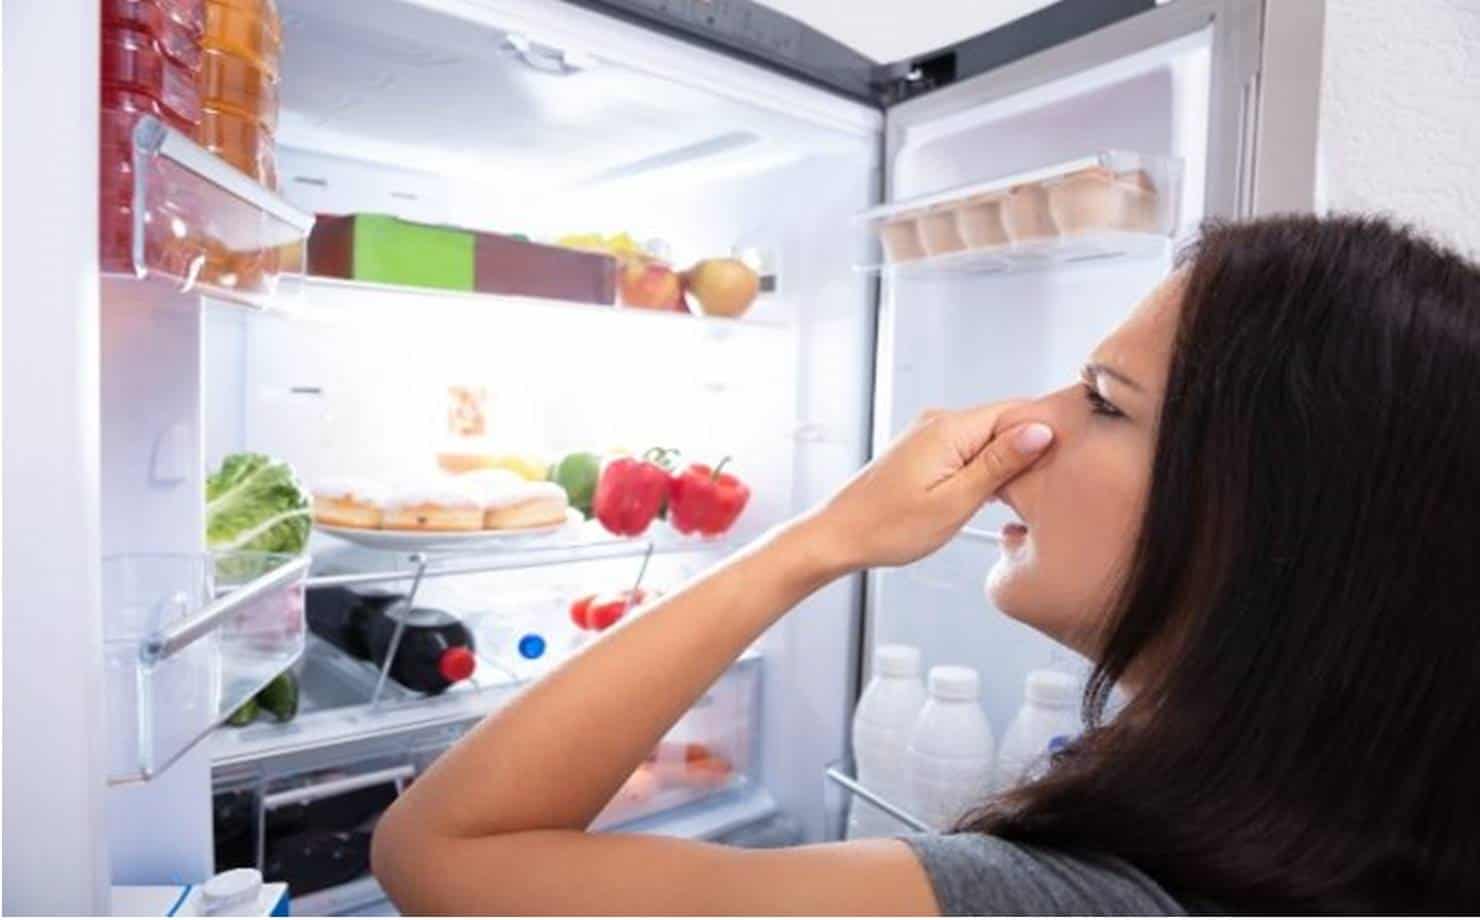 Mistura caseira para acabar com odores ruins dentro de sua geladeira